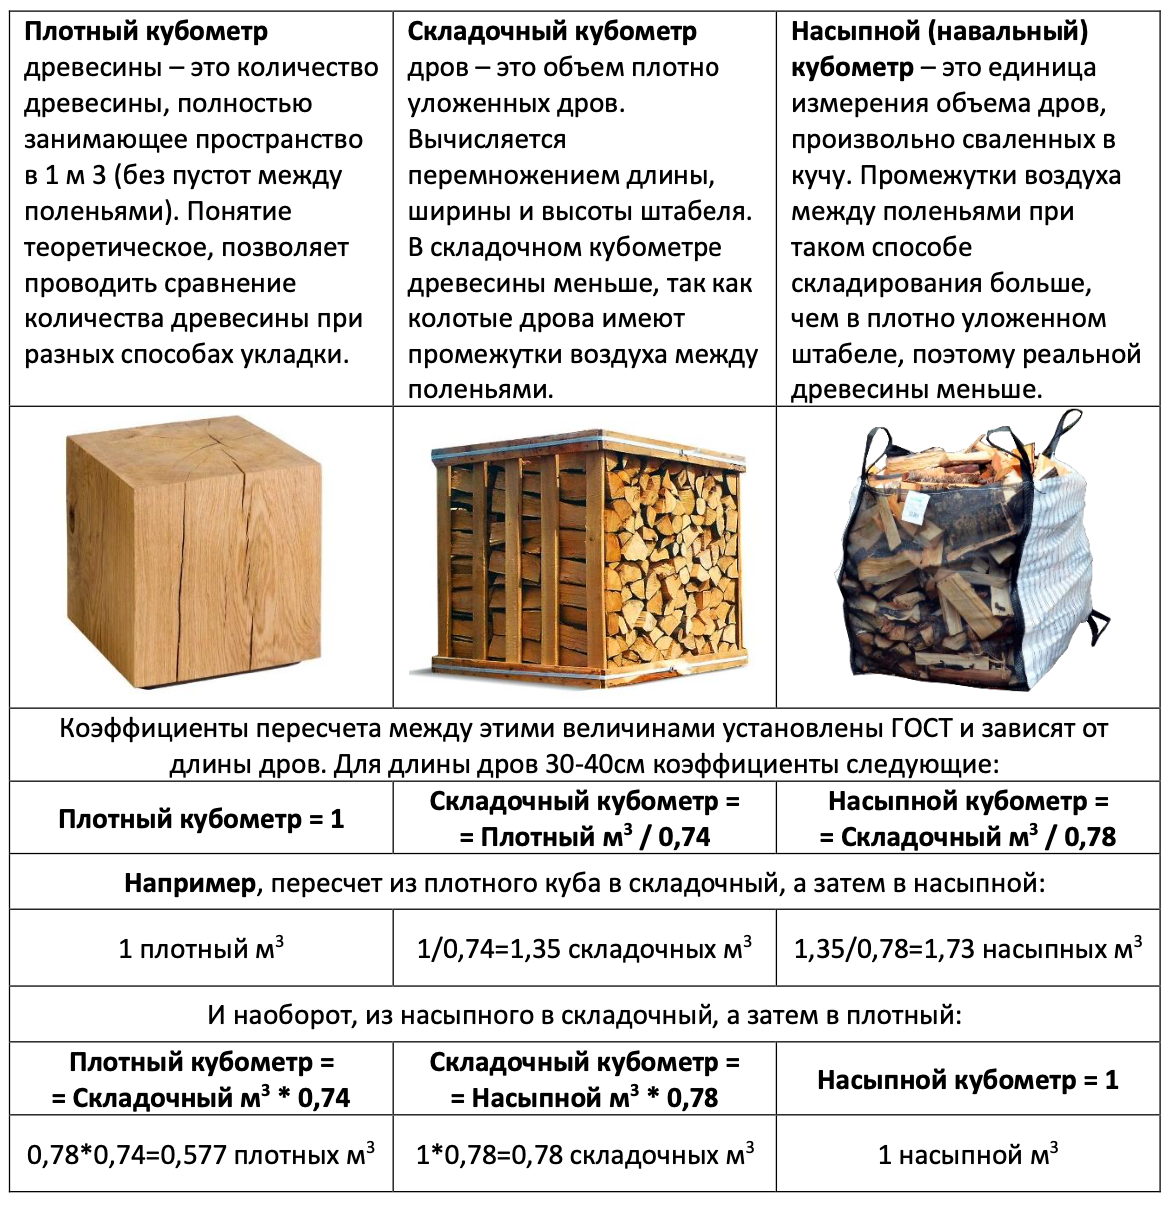 Сколько кг в кубометре дров. Фишка дров это сколько. ГАЗ 66 объем дров. Складометр дров это сколько. Навальный куб дров сколько.